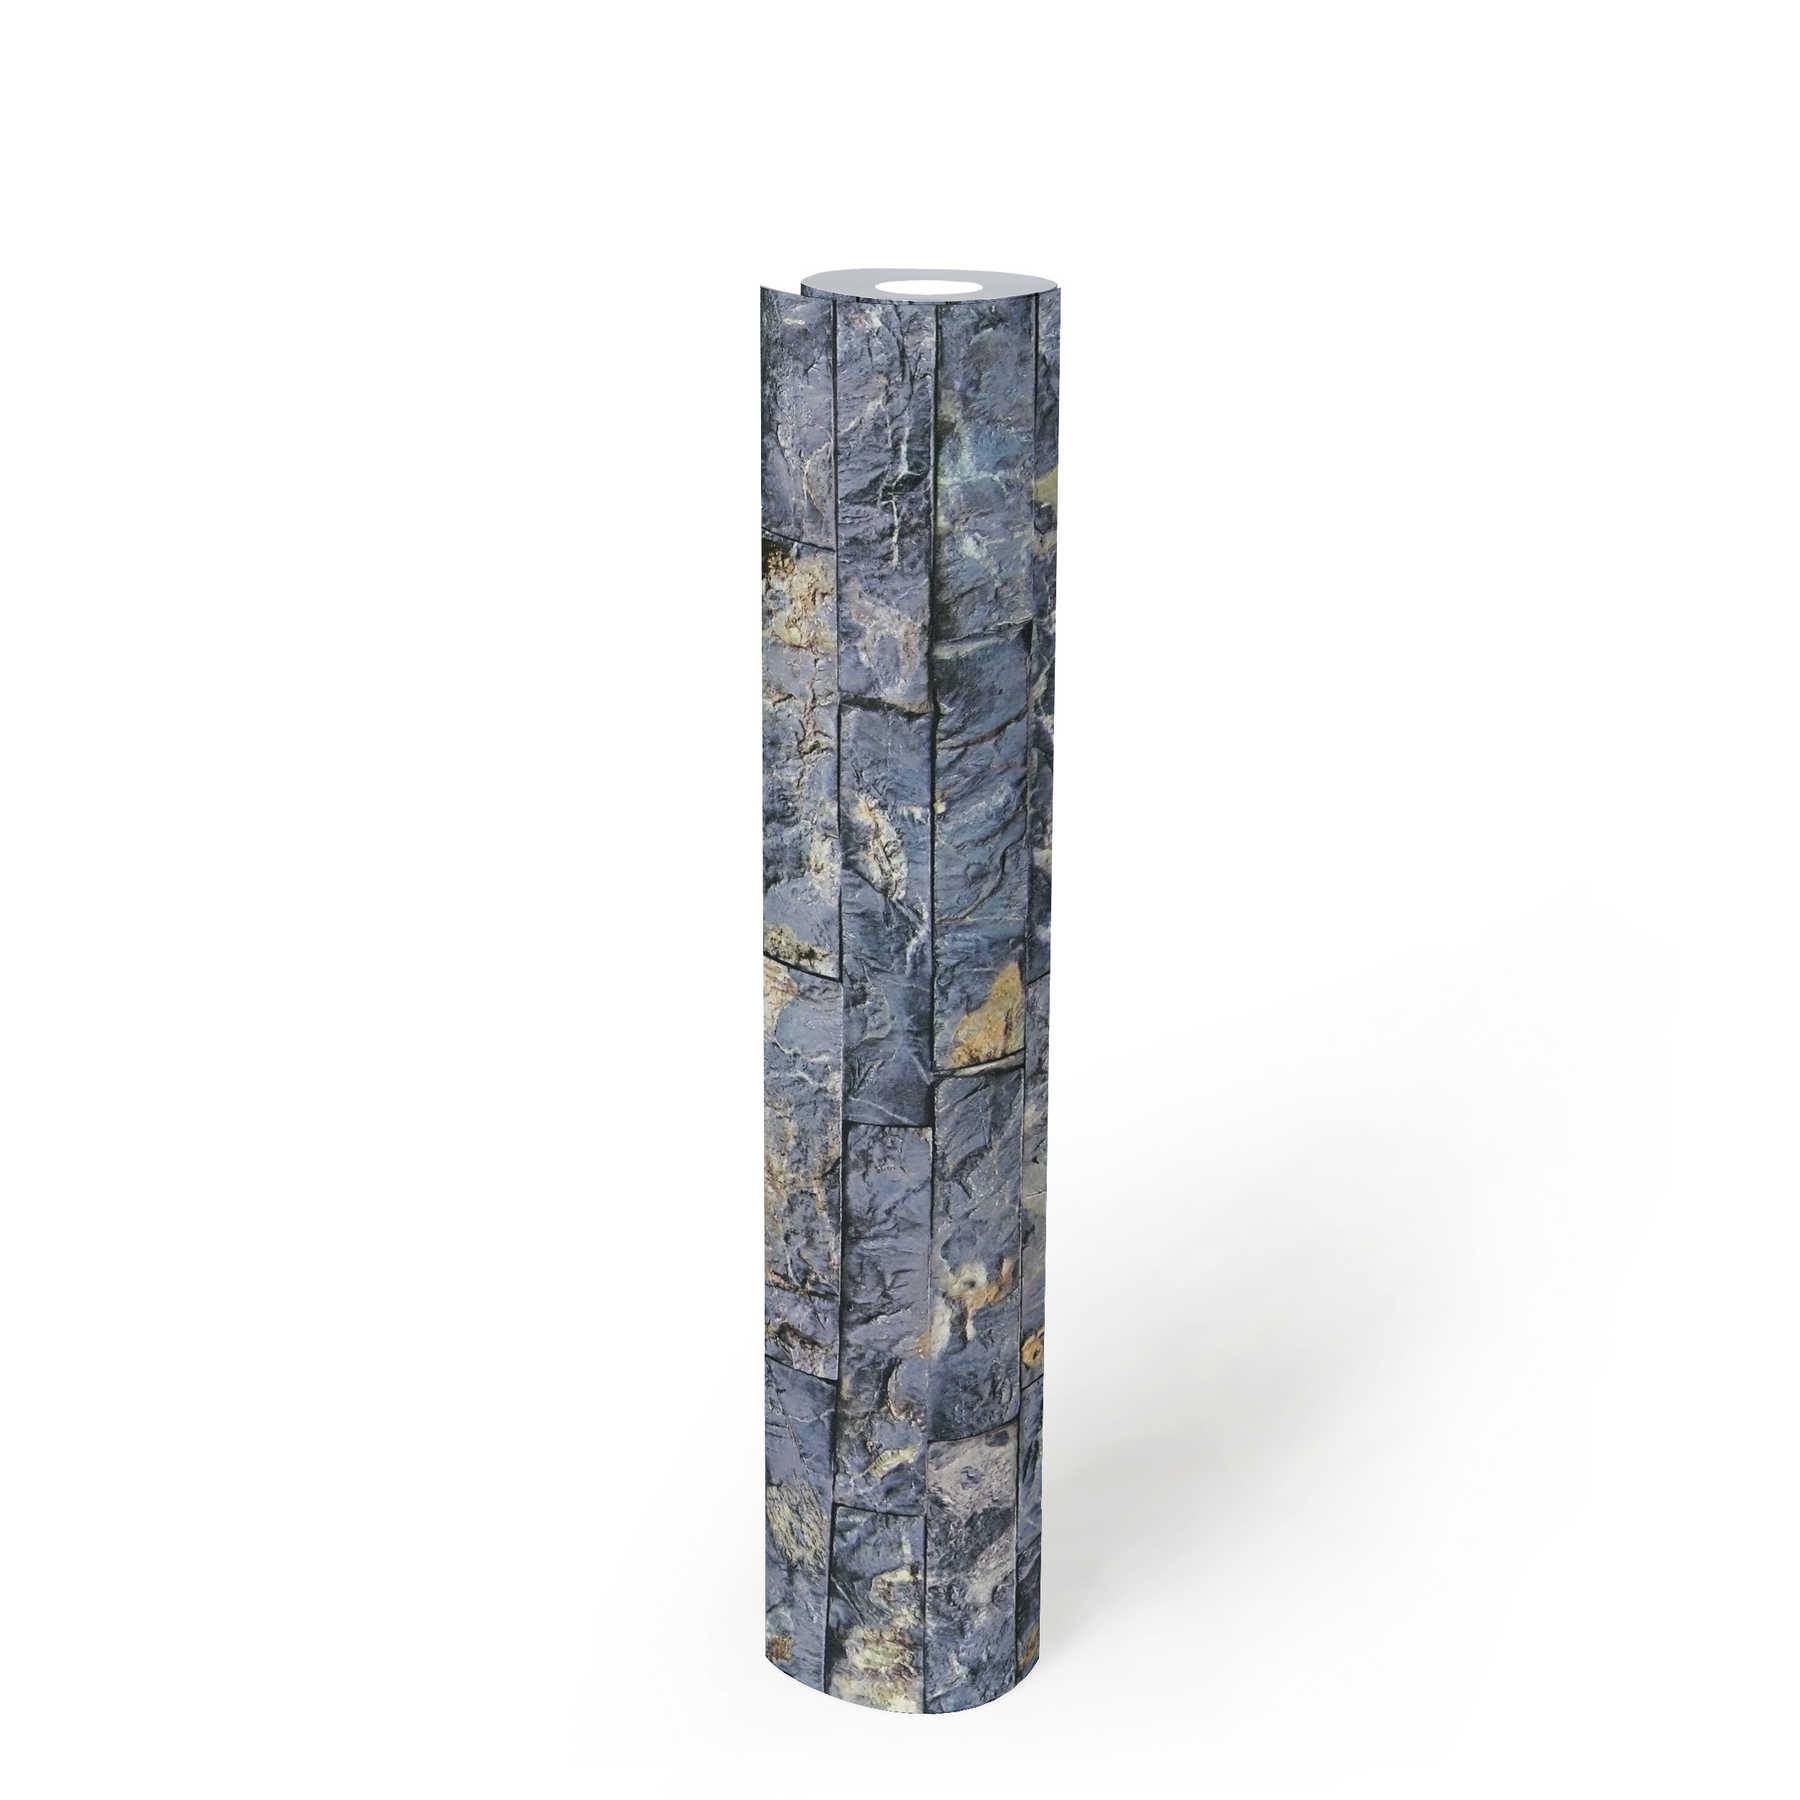             Papier peint imitation pierre avec maçonnerie 3D Quartz - bleu, gris
        